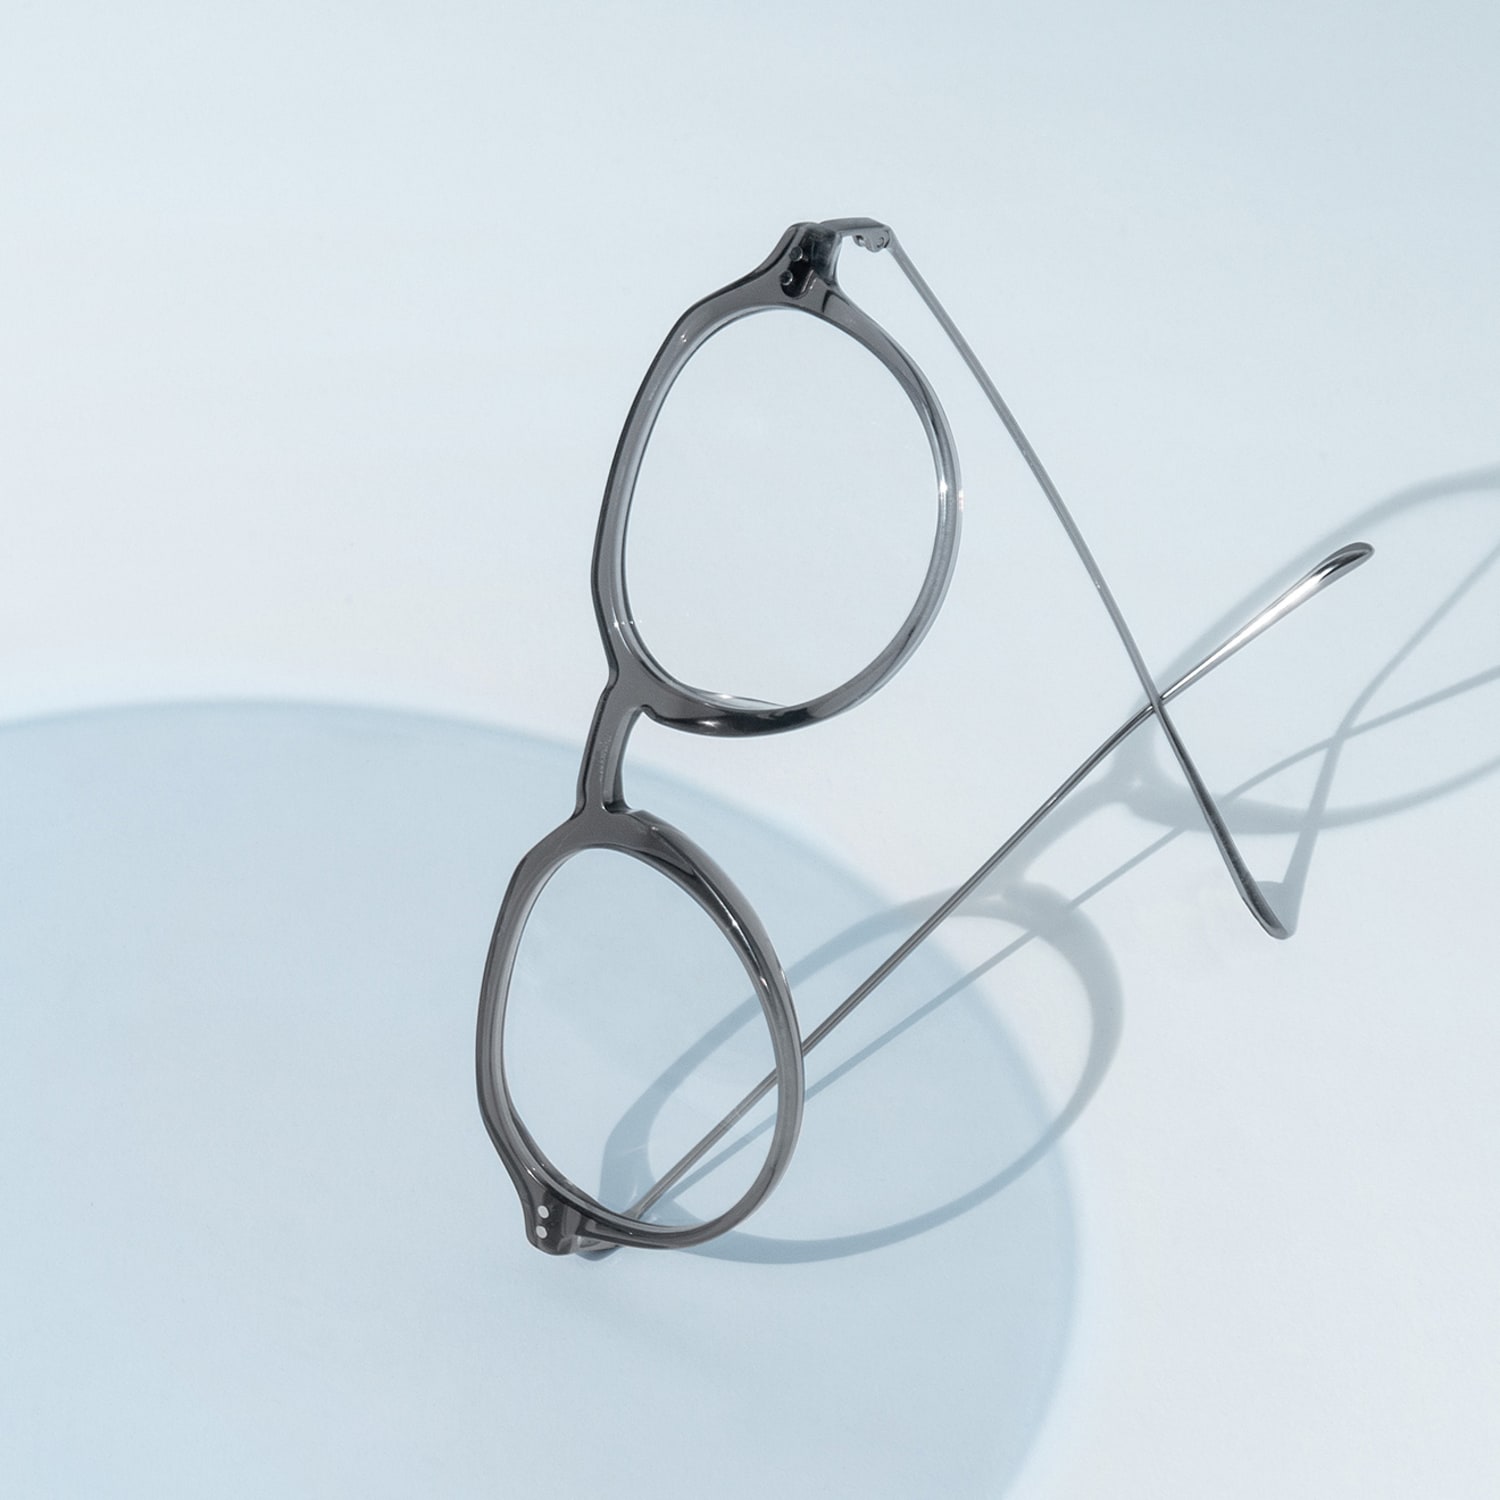 Blue-Blocker Brille BLUEBREAKER® für ermüdungsfreies Sehen